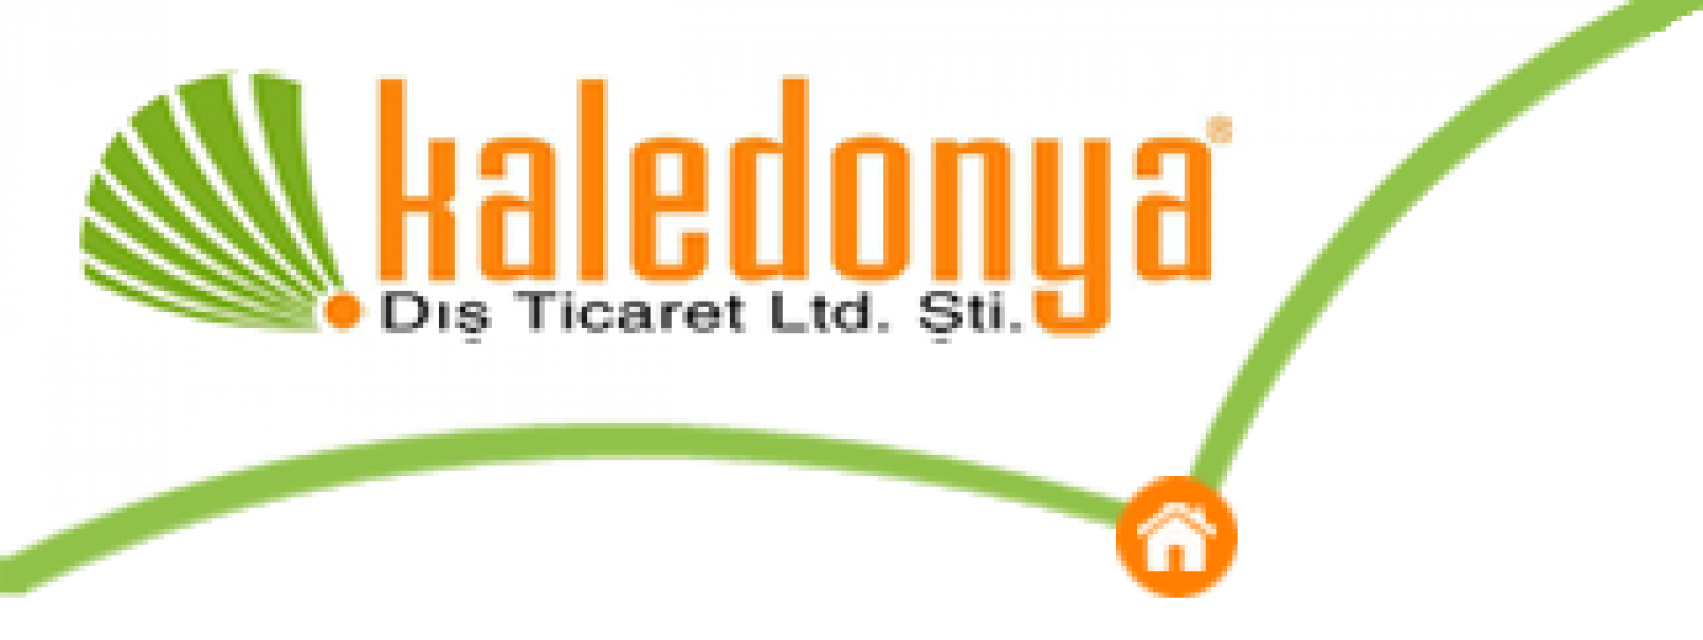 Kaledonya Diş Ticaret Limited şirketi